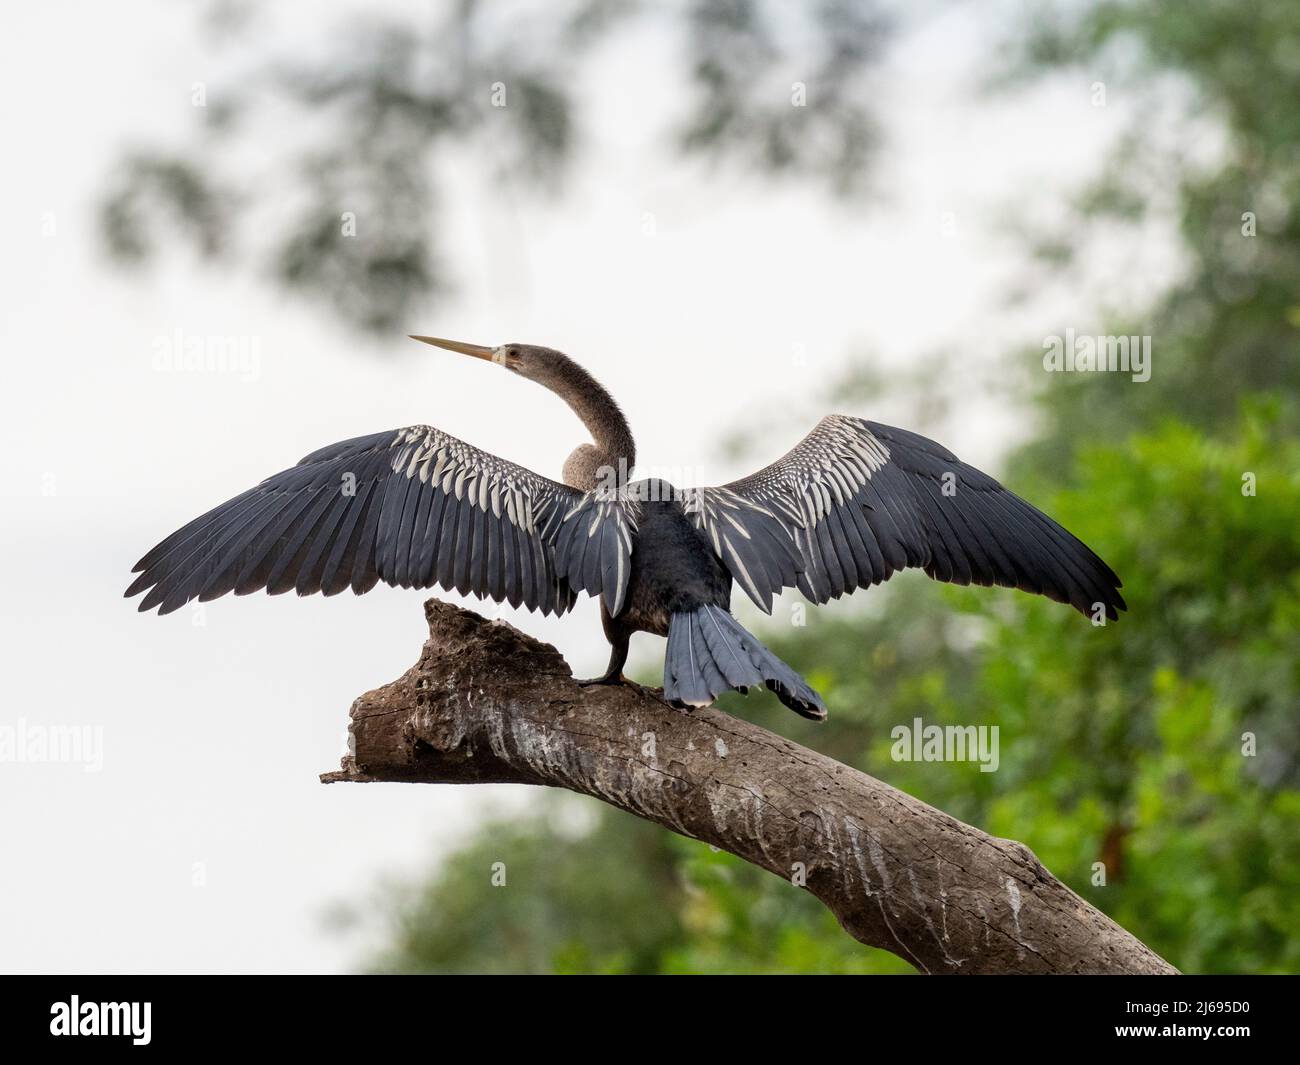 Erwachsene Anhinga (Anhinga anhinga), die ihre Flügel auf dem Rio Tres Irmao, Mato Grosso, Pantanal, Brasilien, Südamerika trocknet Stockfoto